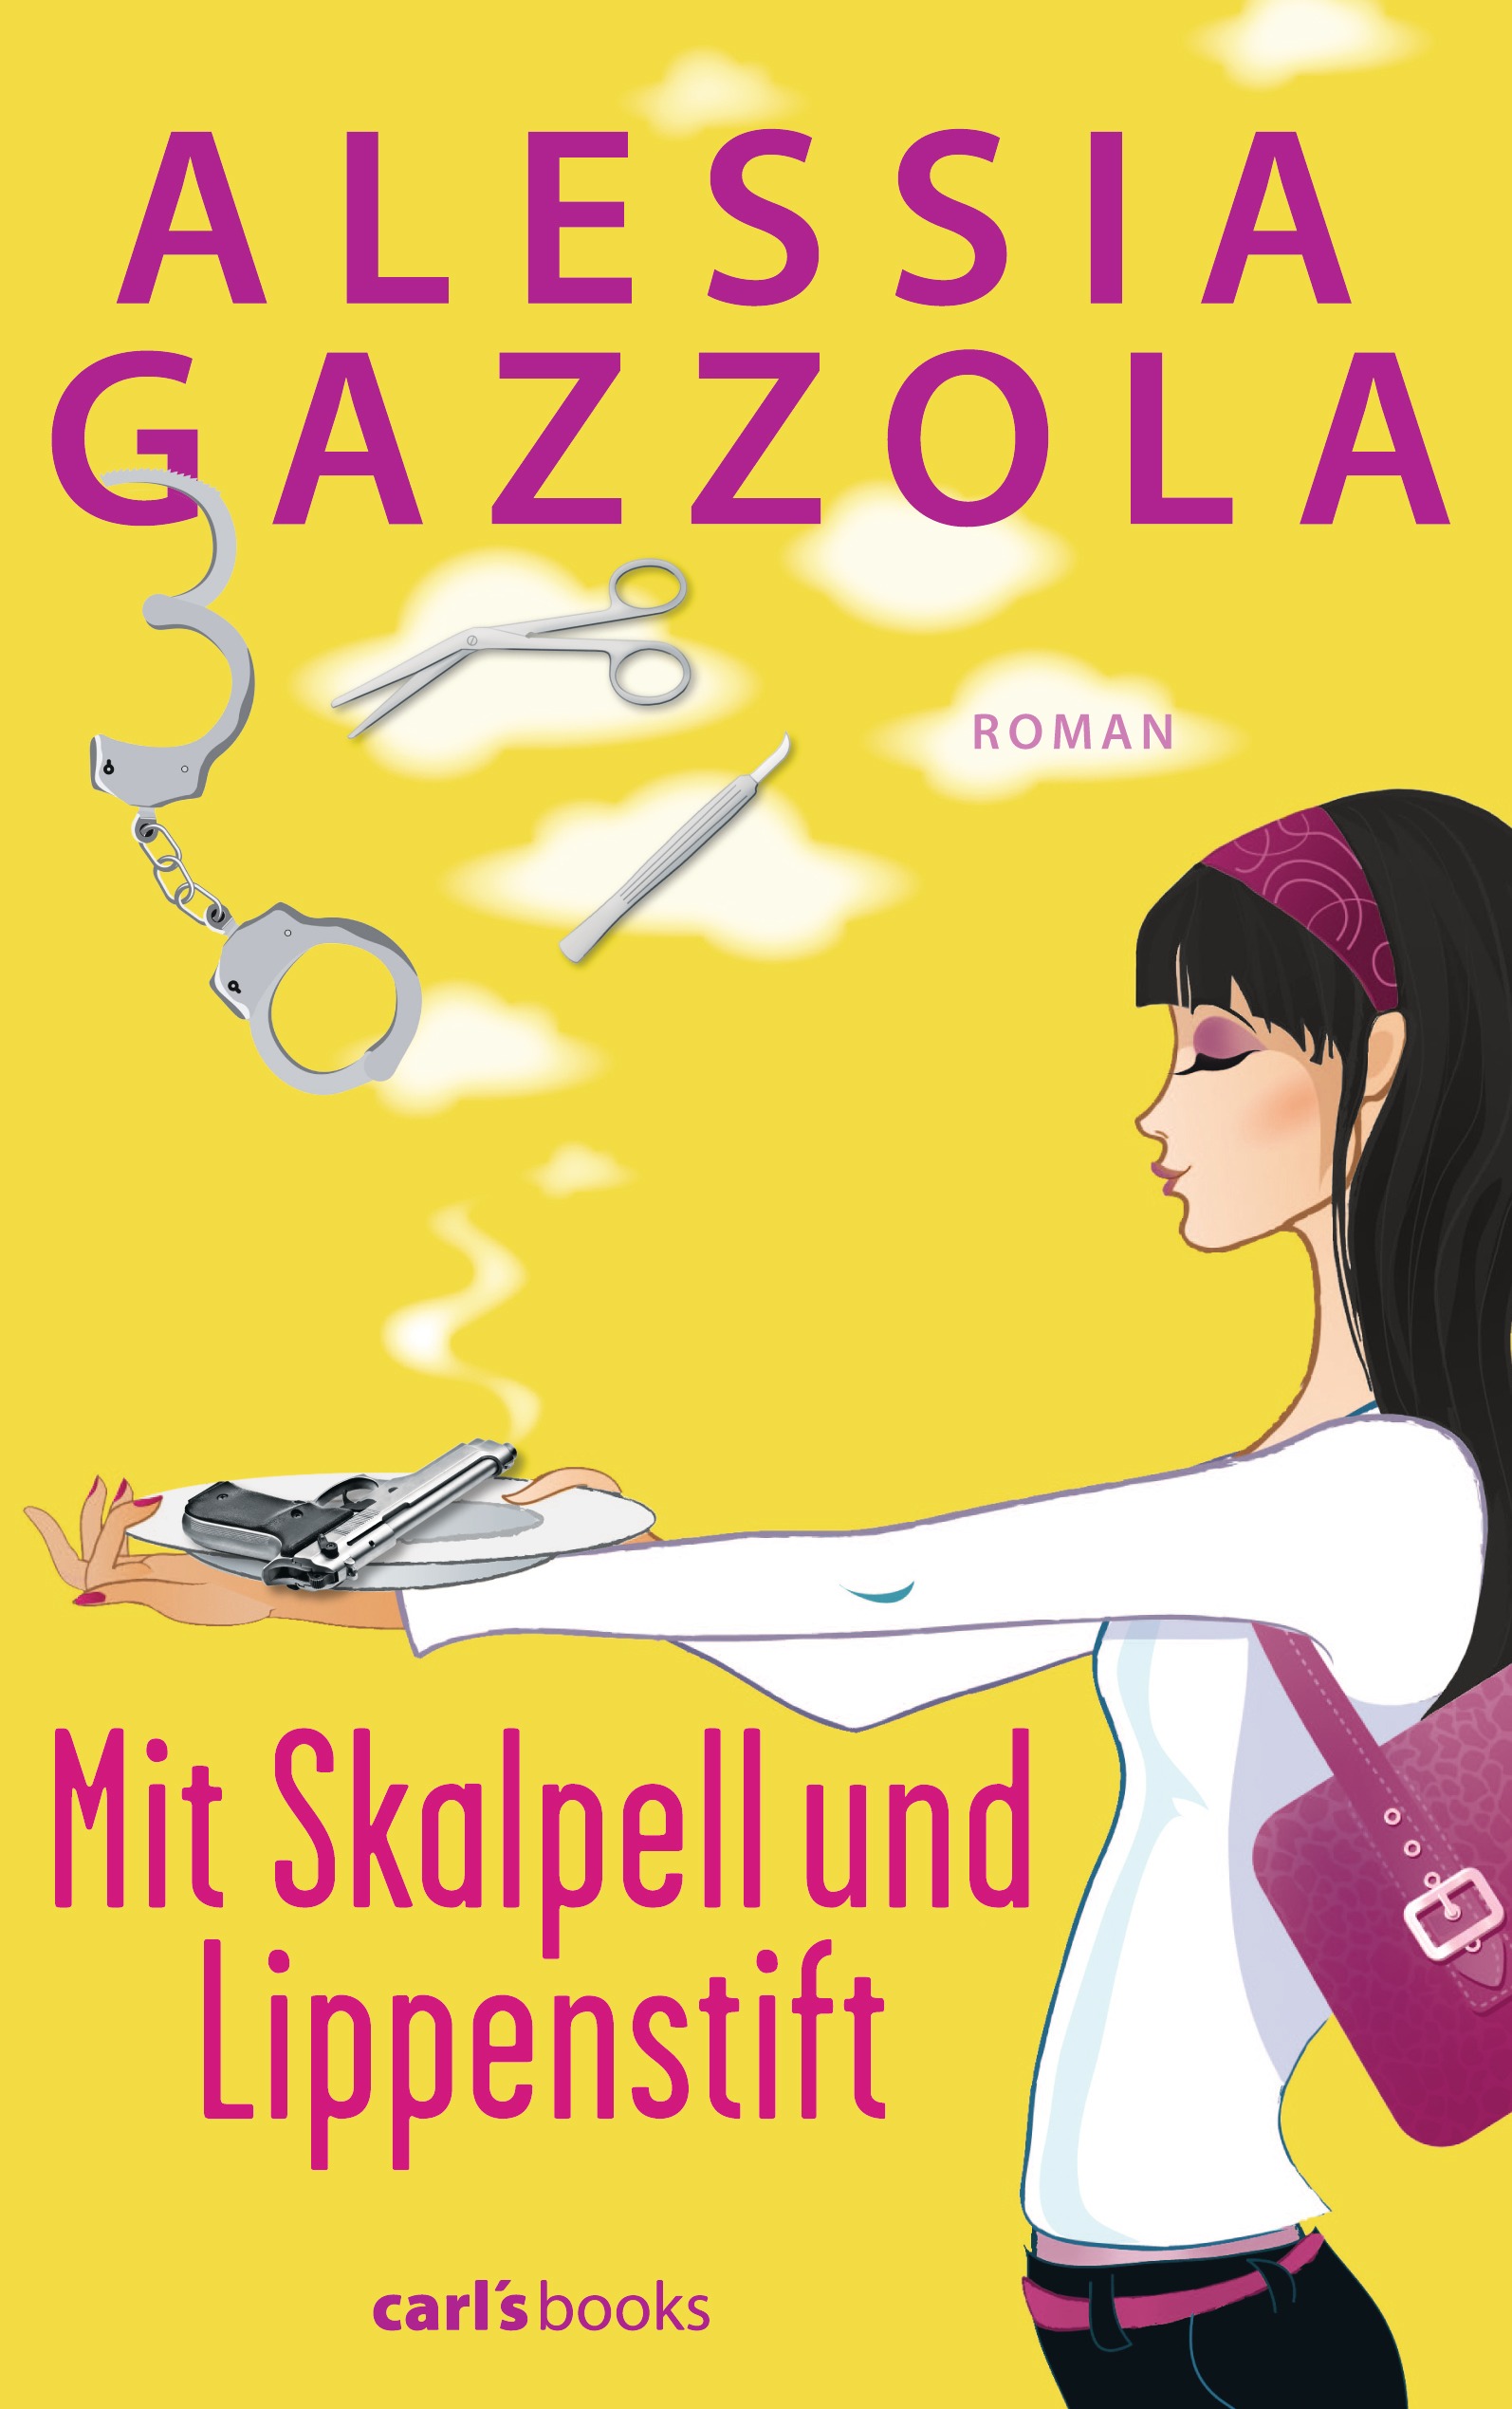 Alessia Gazzola: Mit Skalpell und Lippenstift - eBook - carl's books